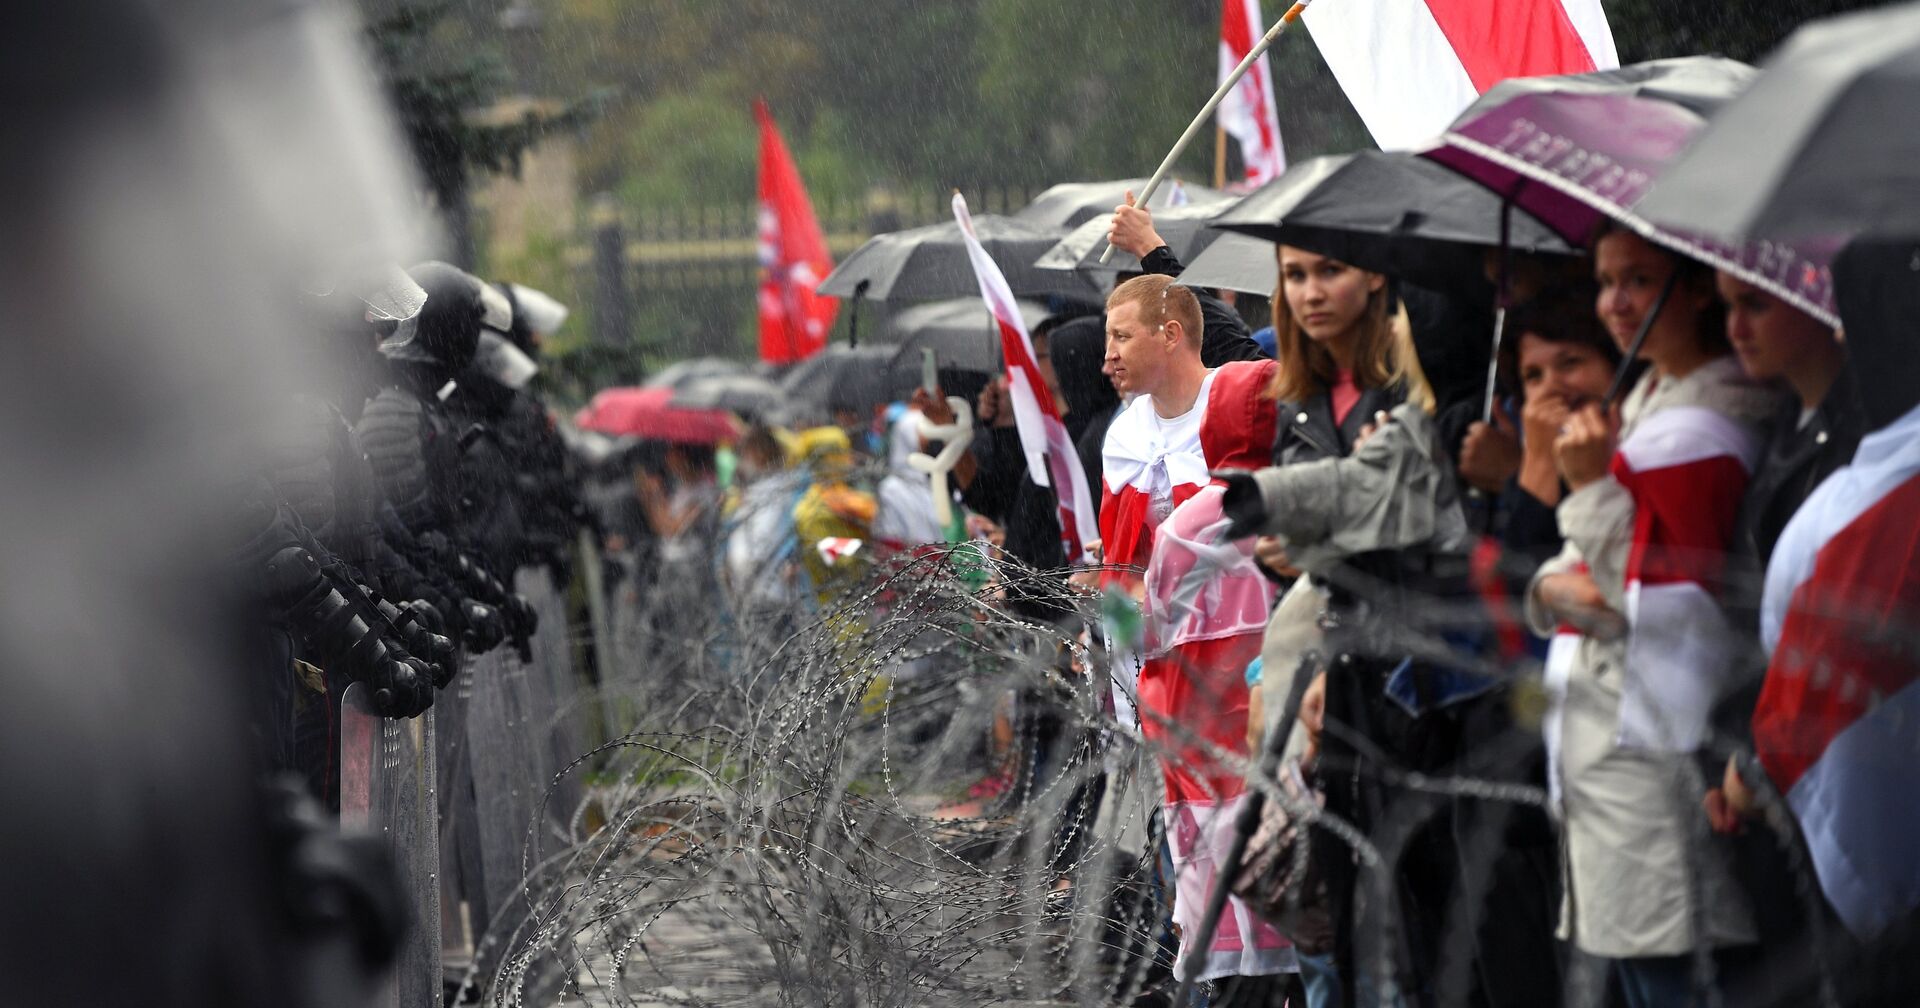 Участники несанкционированной акции оппозиции Марш единства и сотрудники милиции на одной из улиц в Минске - ИноСМИ, 1920, 11.08.2021